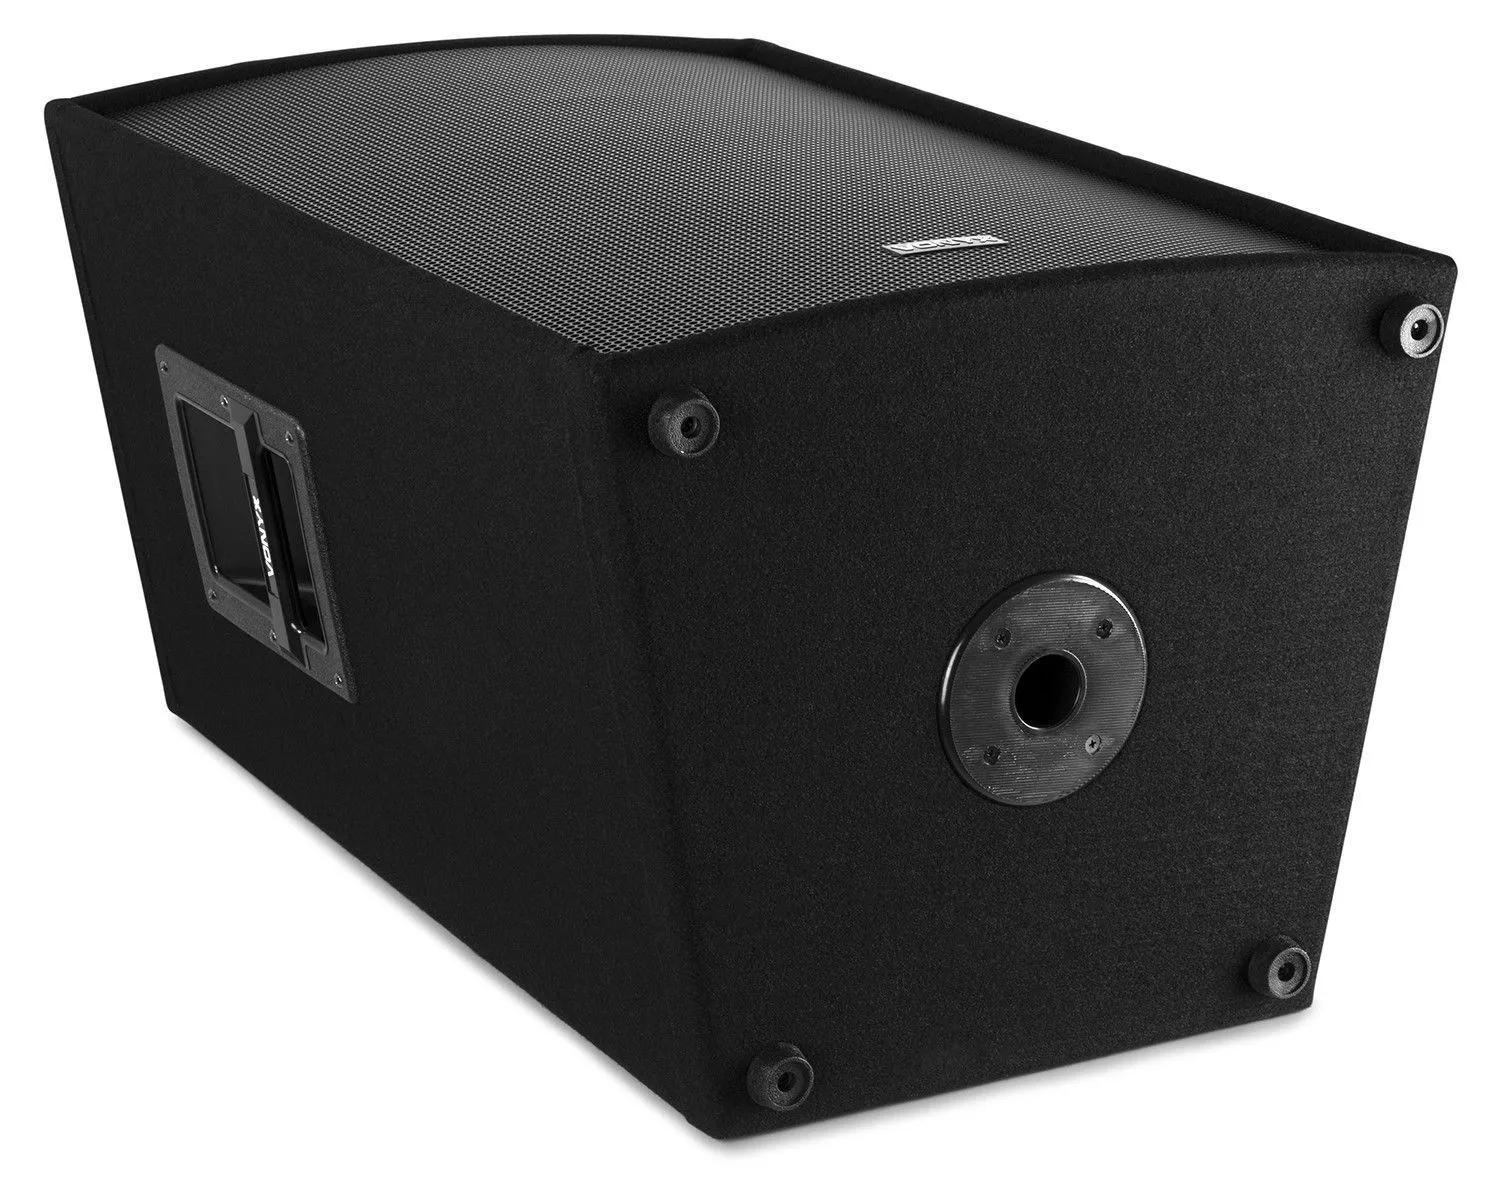 Vonyx retourdeals passieve speakers|passieve speakers